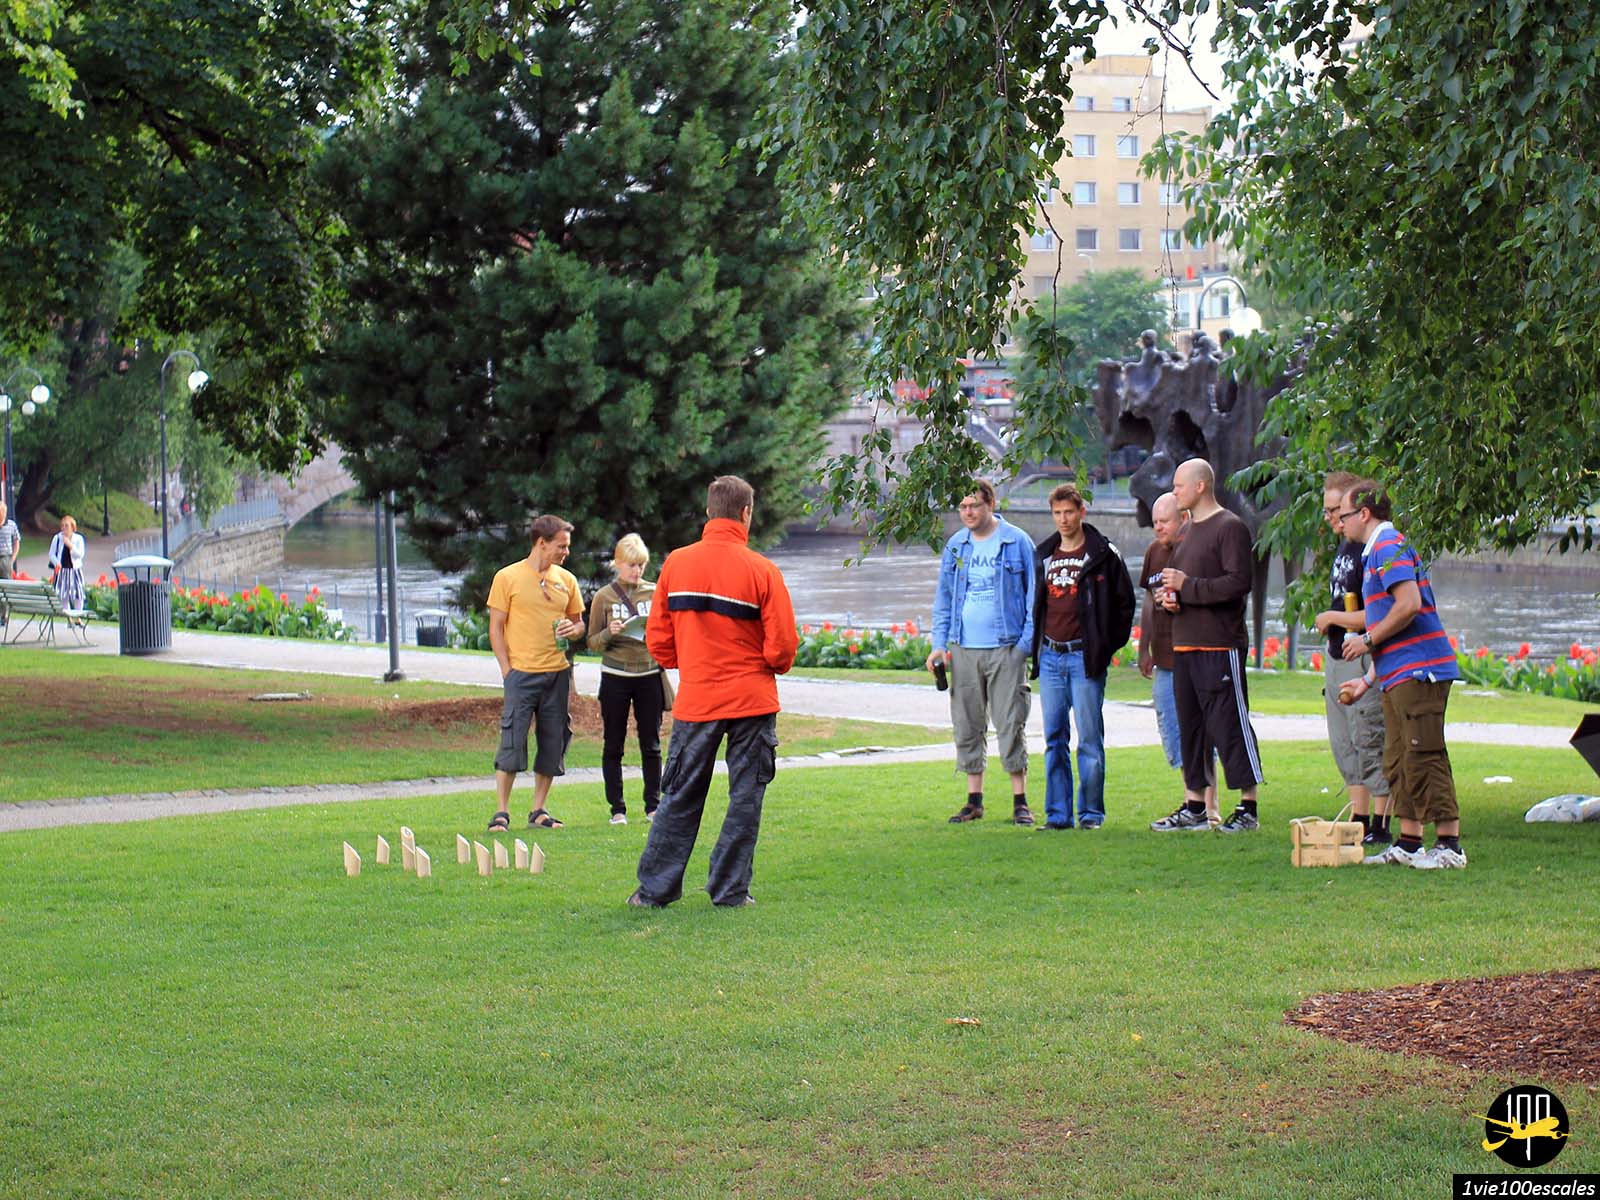 Le jeu Mölkky dans un parc du centre ville de Tampere en FInlande